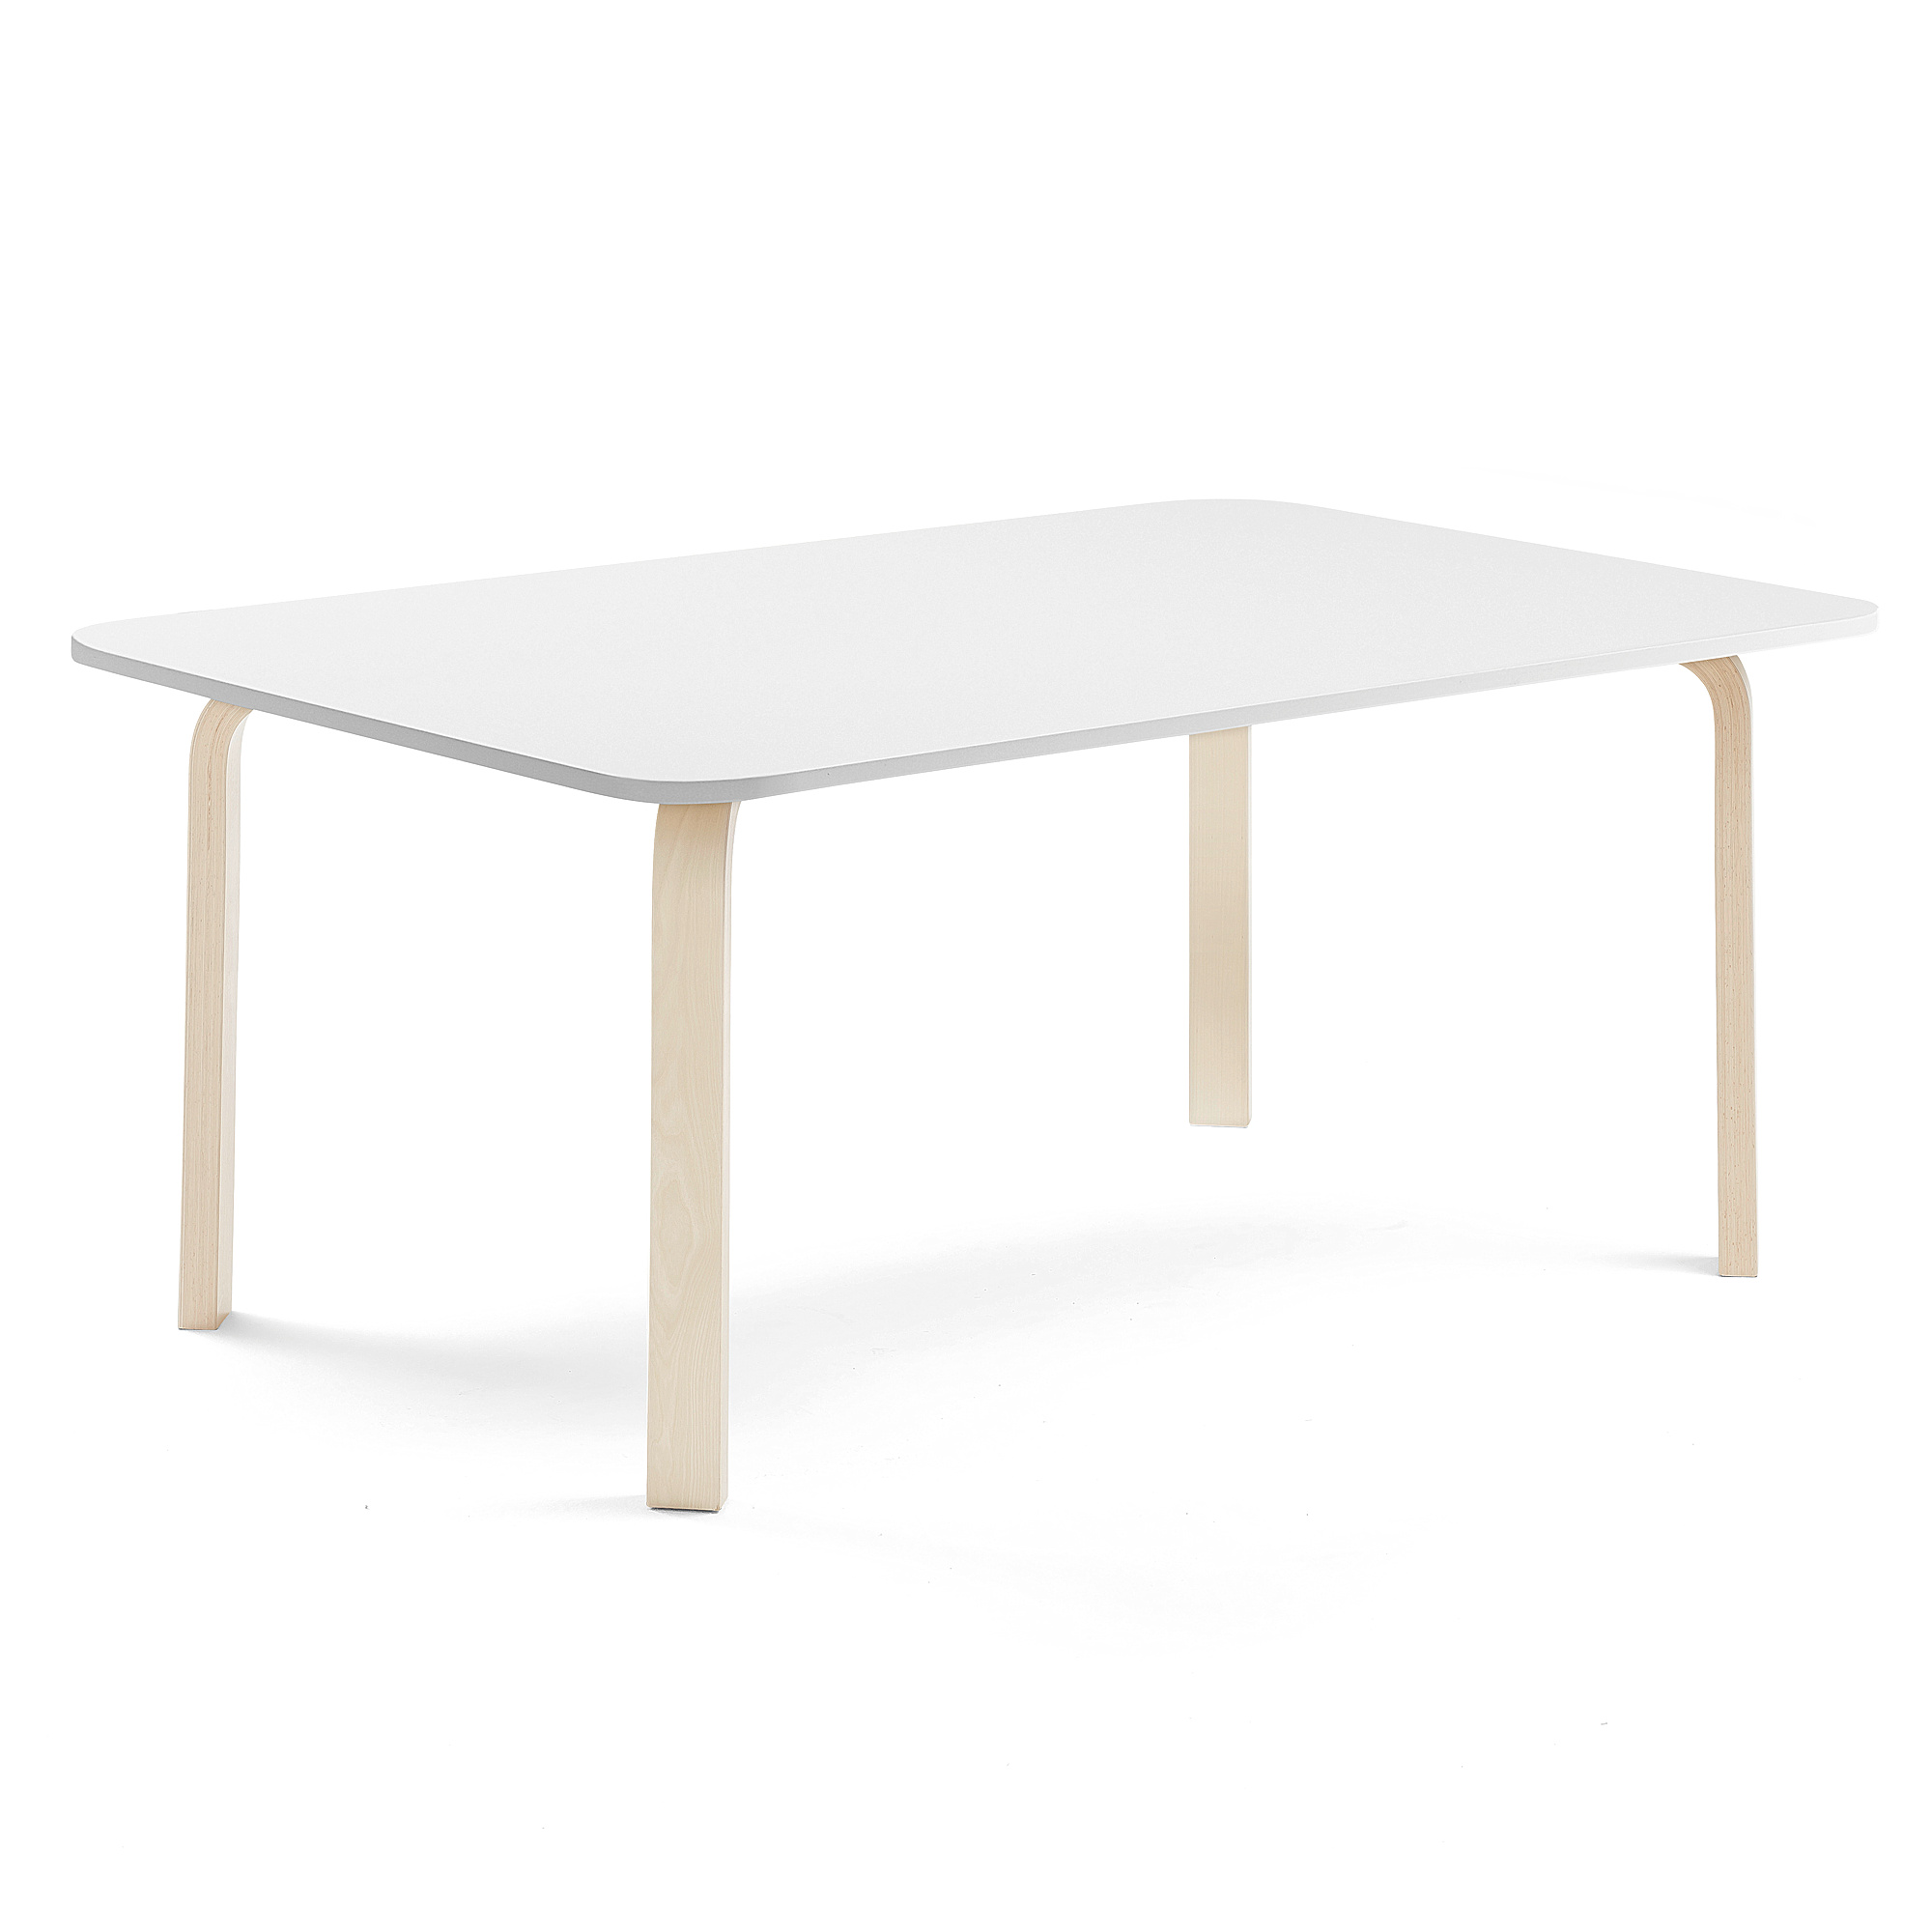 Stůl ELTON, 1800x800x590 mm, bříza, akustická HPL deska, bílá